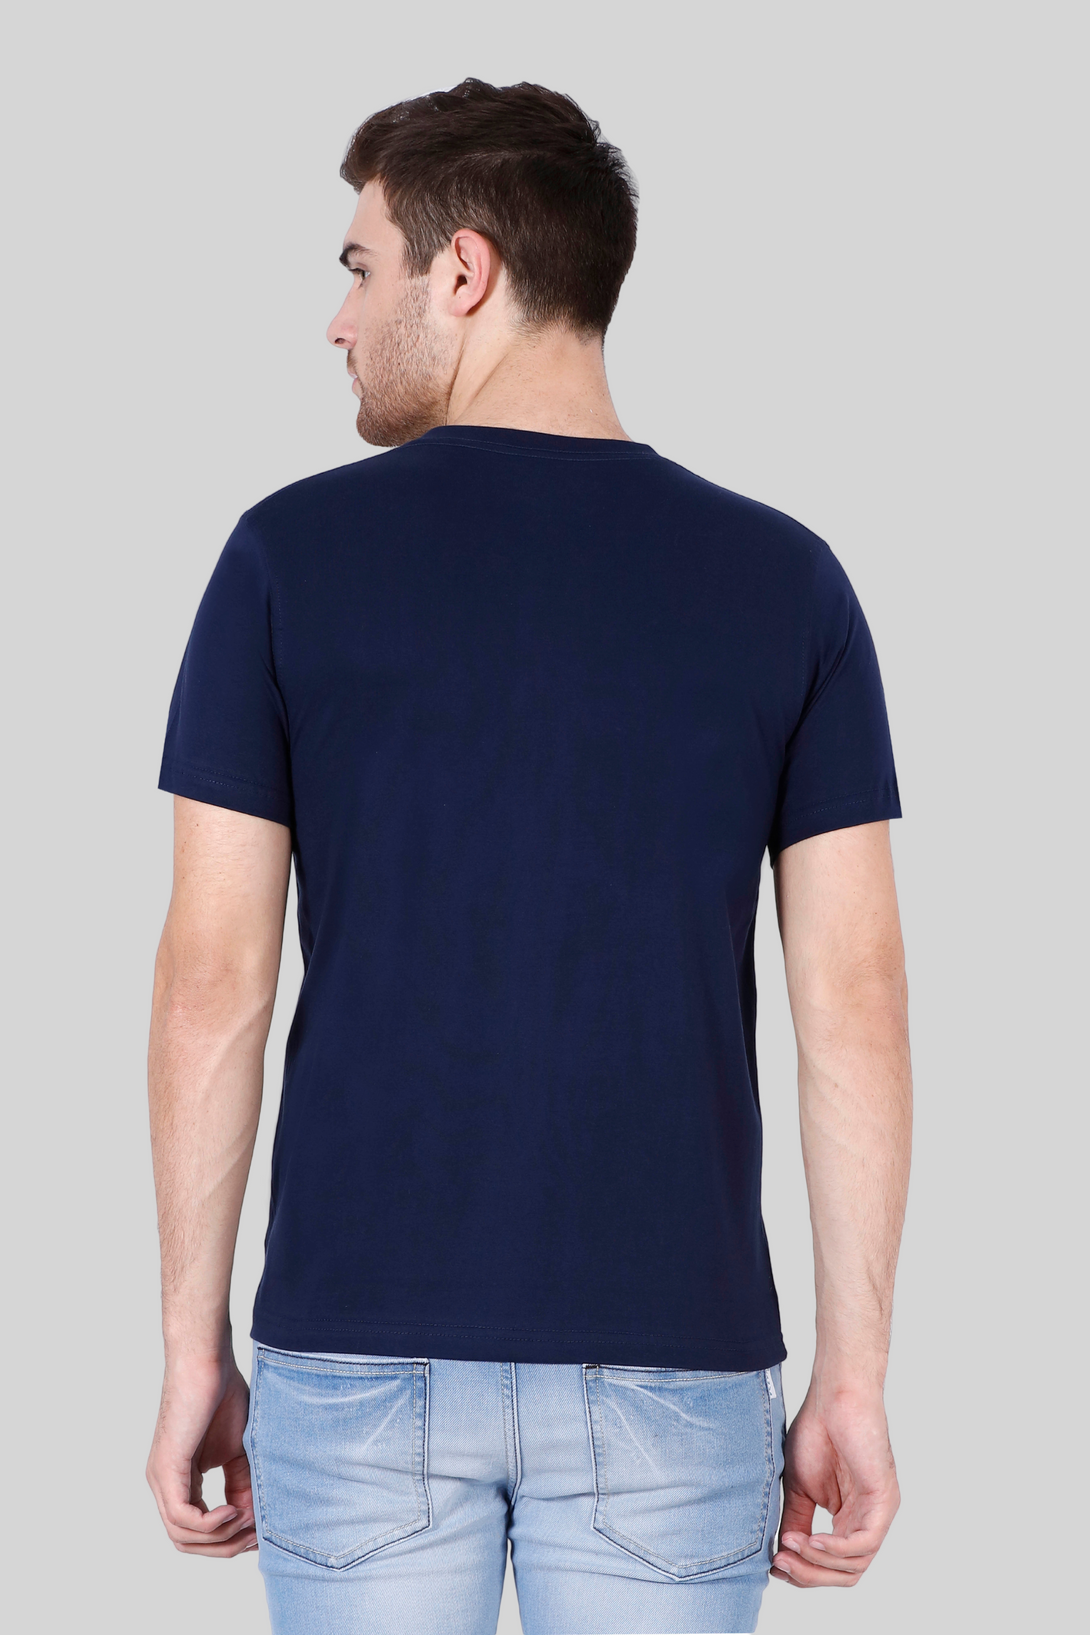 Navy Blue V Neck T-Shirt For Men - WowWaves - 9